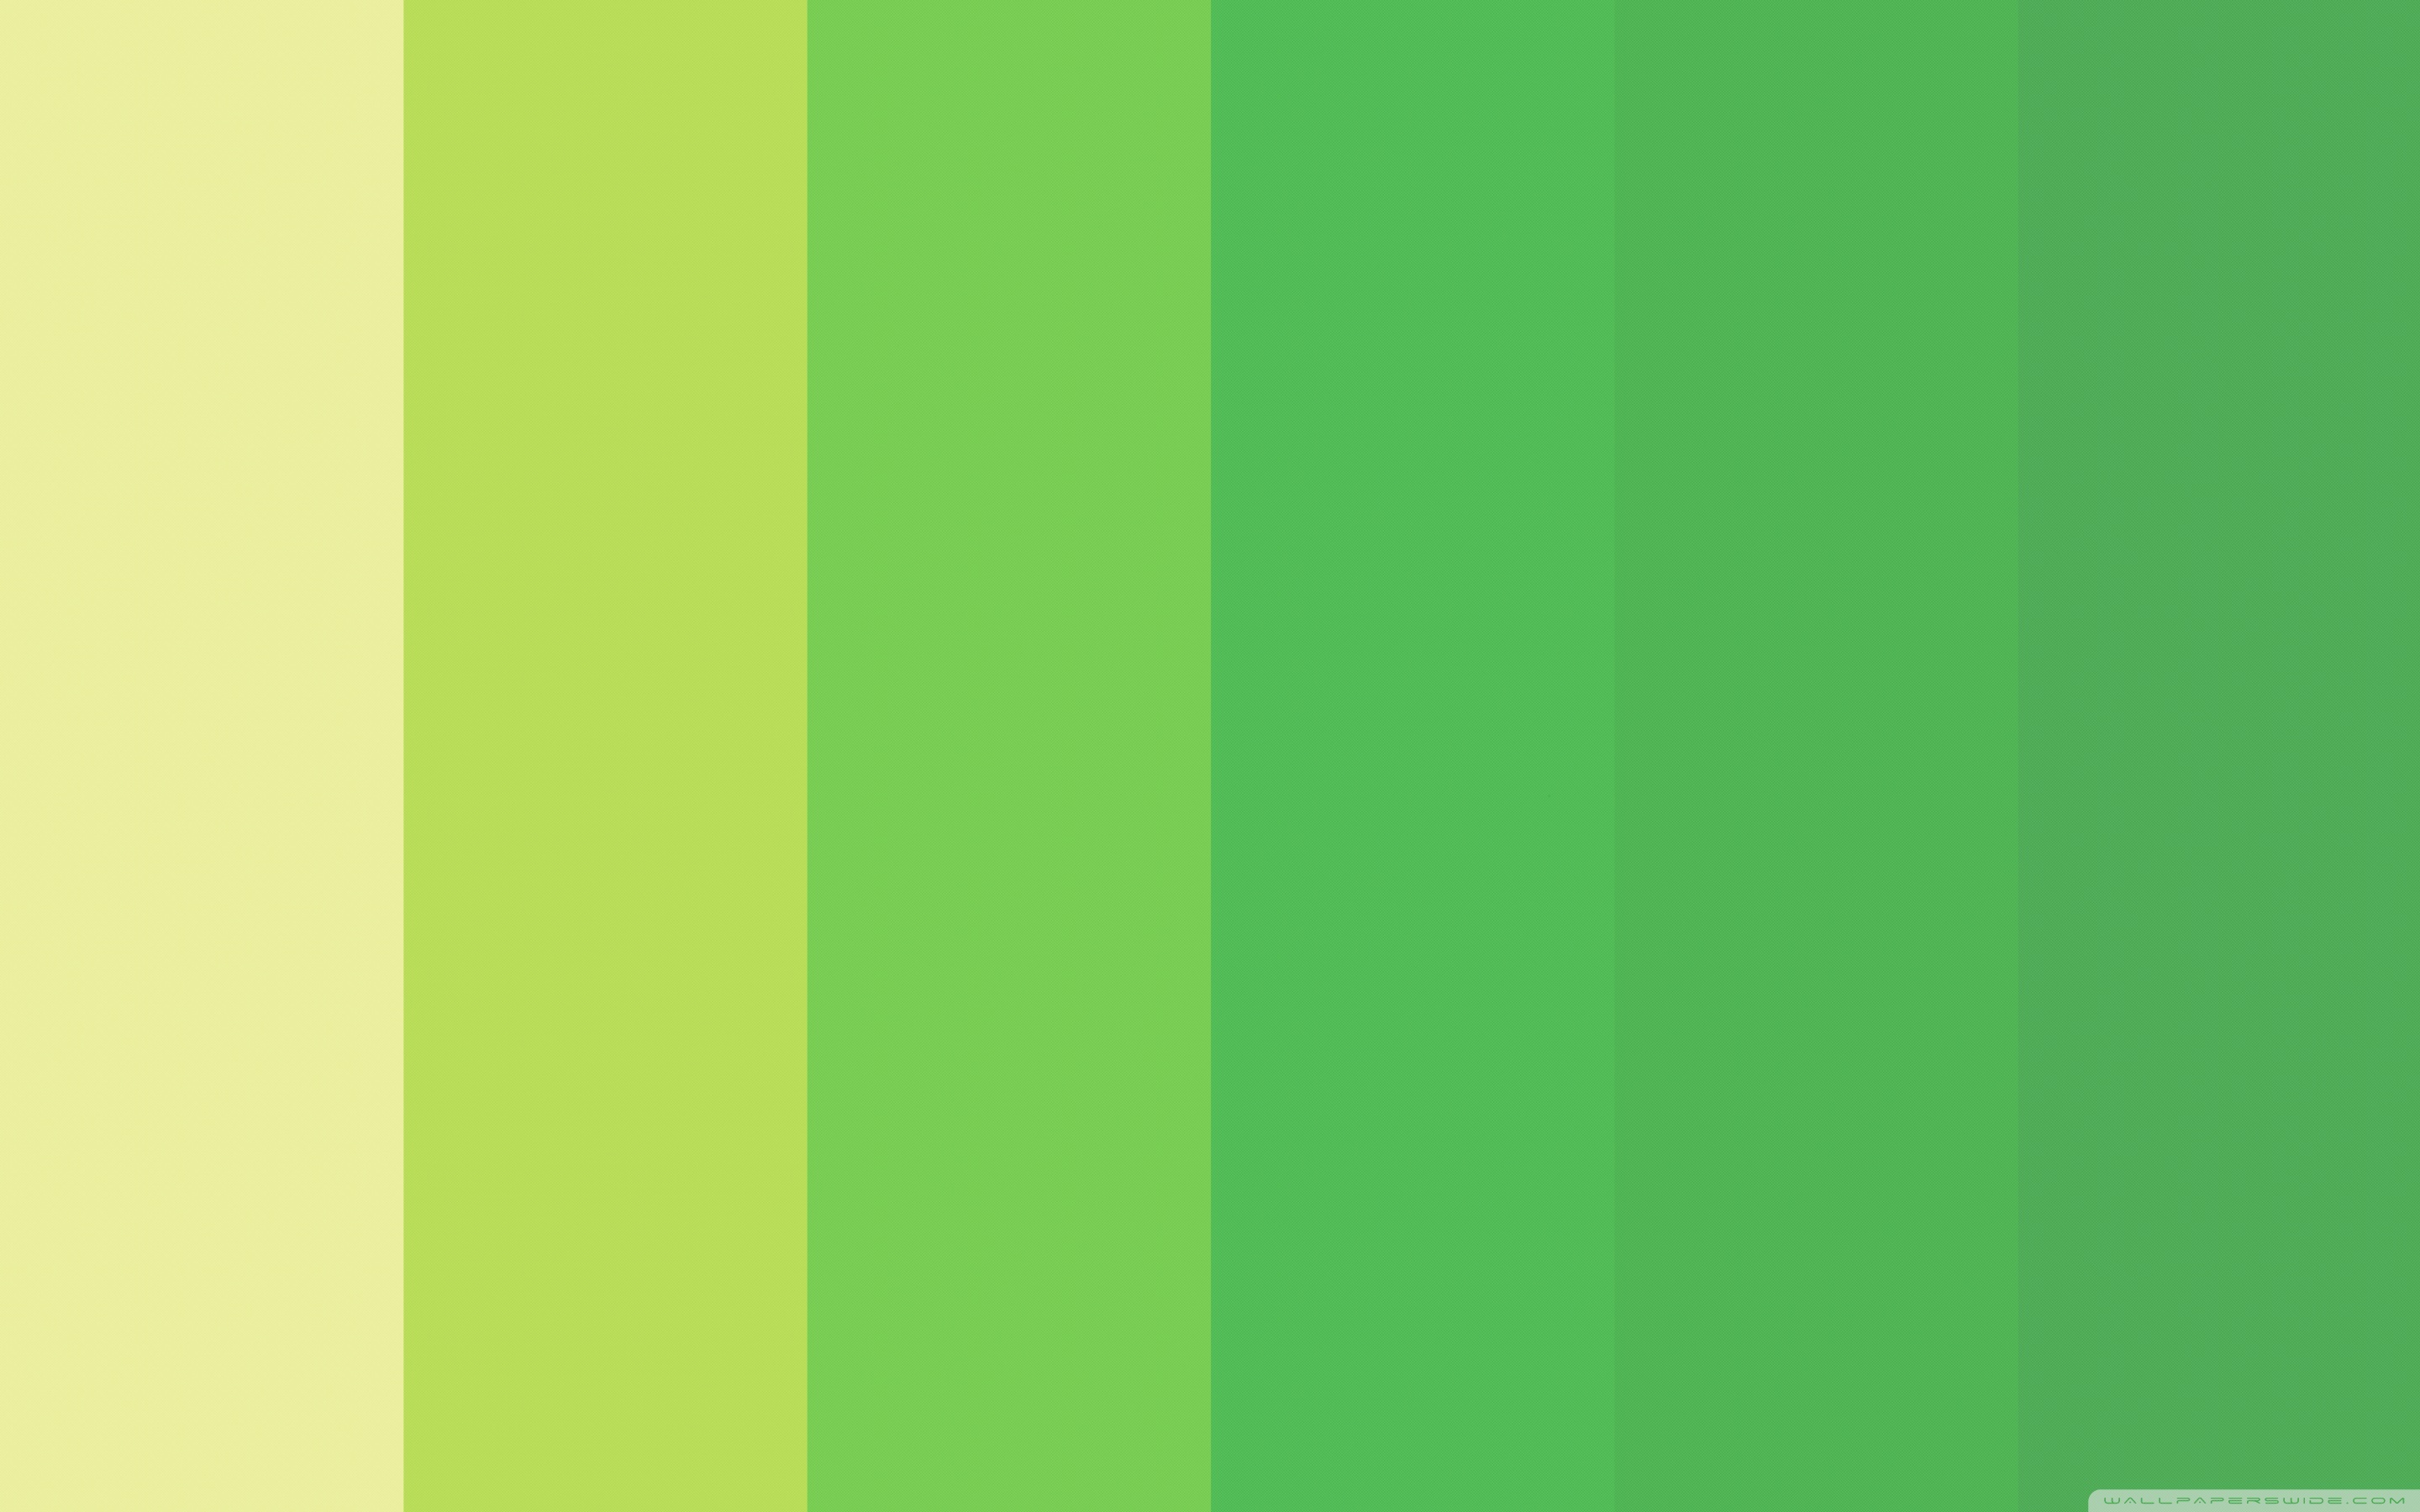 Спокойный зеленый цвет. Color 02-256 цвет Оазис. Color Oasis #f2dcb3. Софт Грин 17090. Палитра зеленых оттенков.